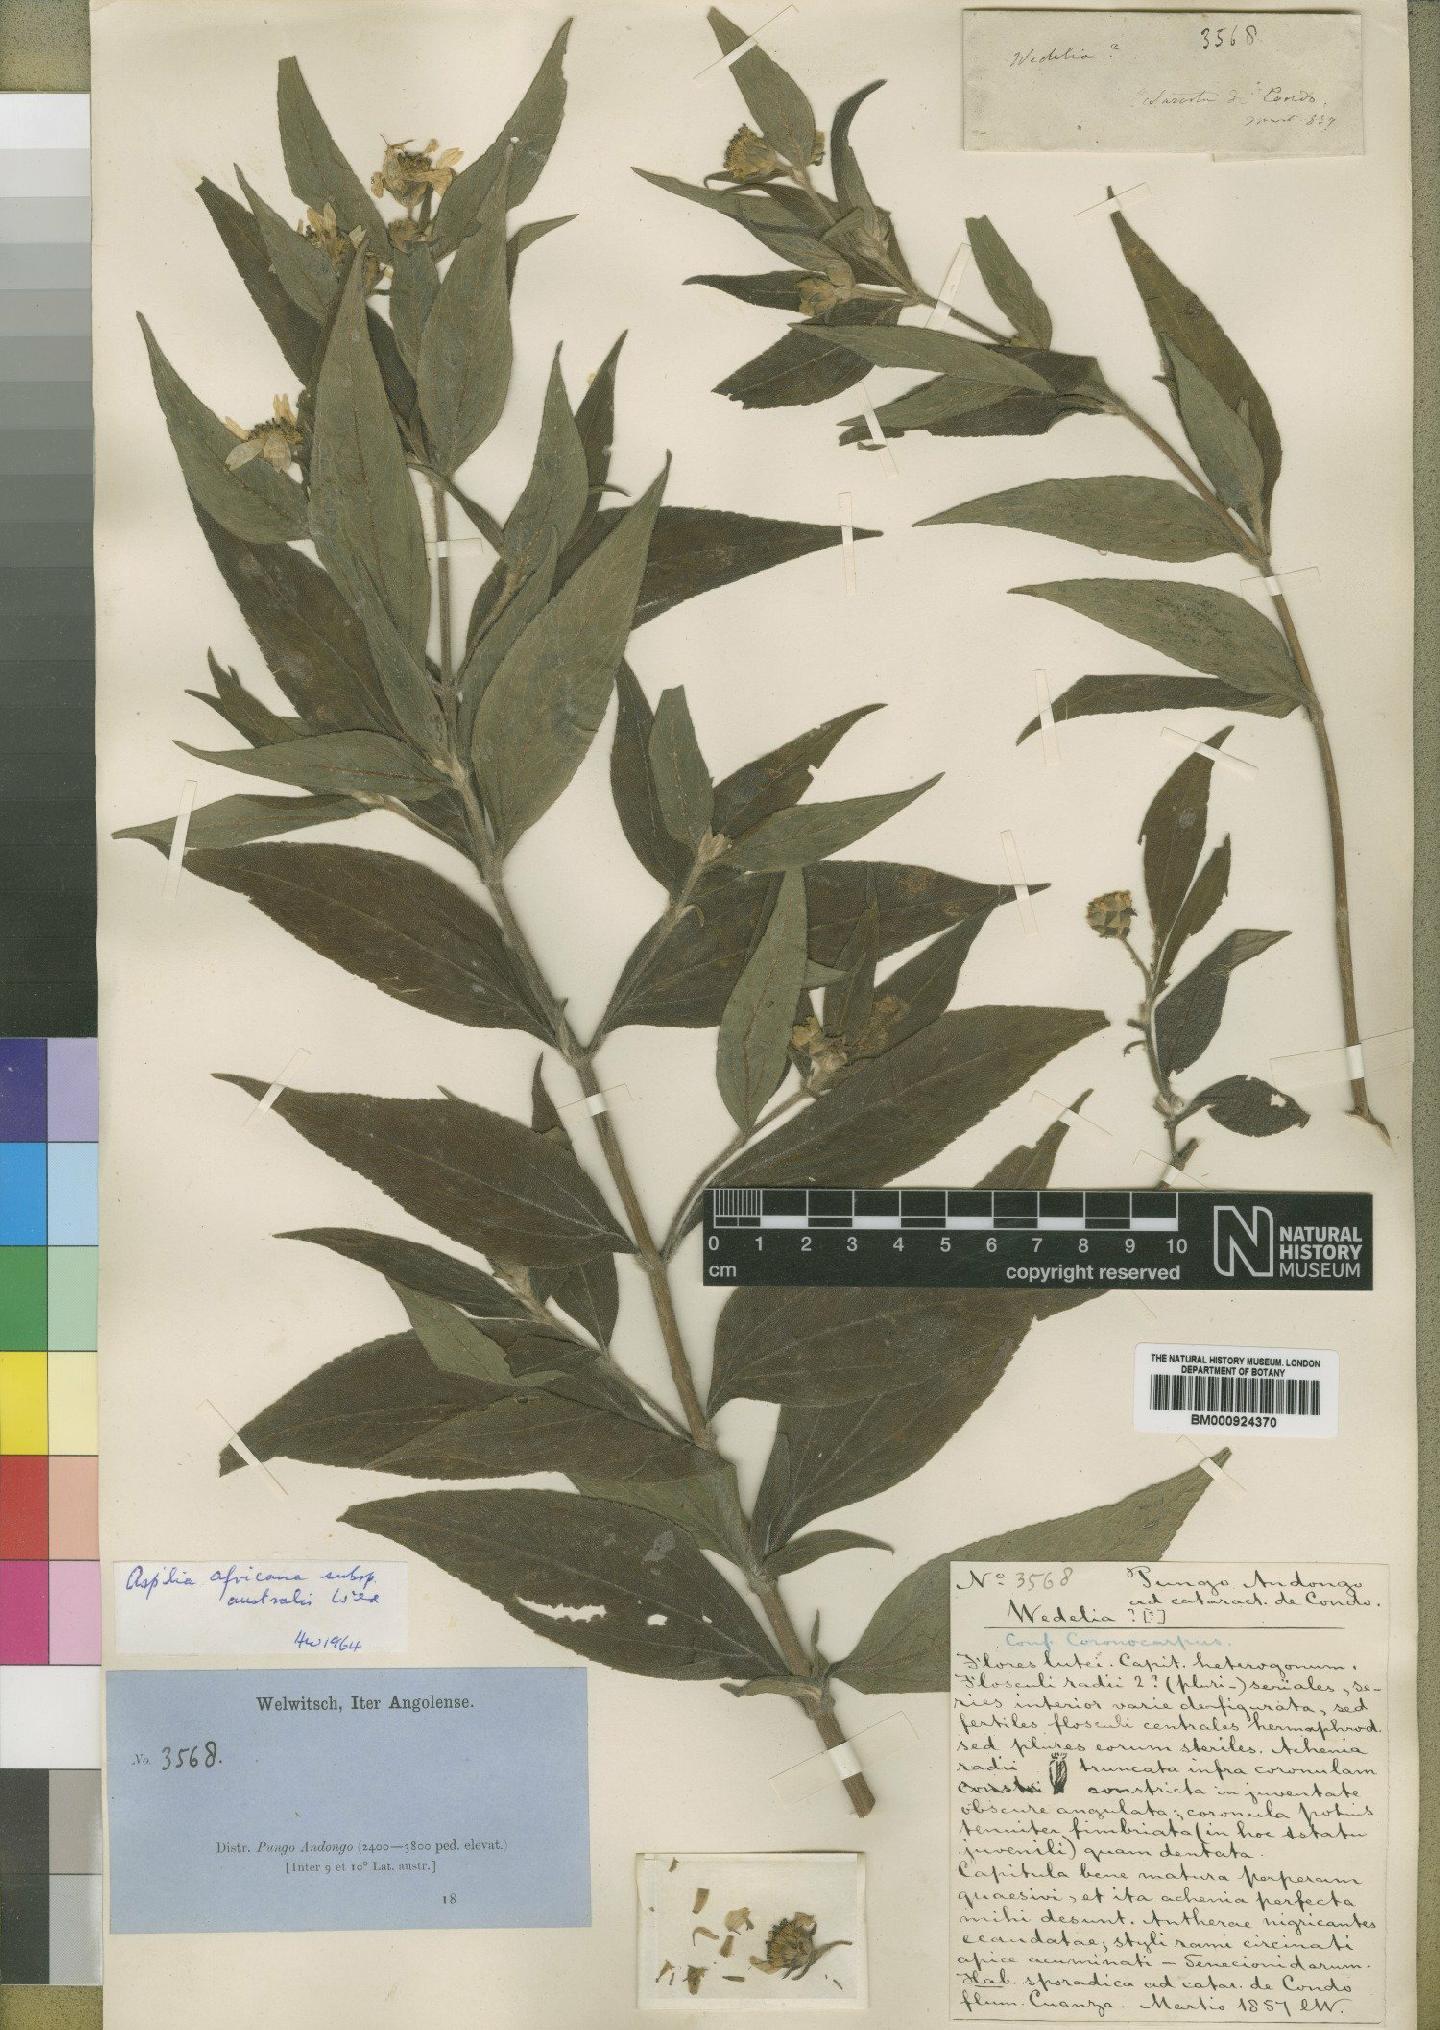 To NHMUK collection (Aspilia africana subsp. australis Wild; Type; NHMUK:ecatalogue:4529398)